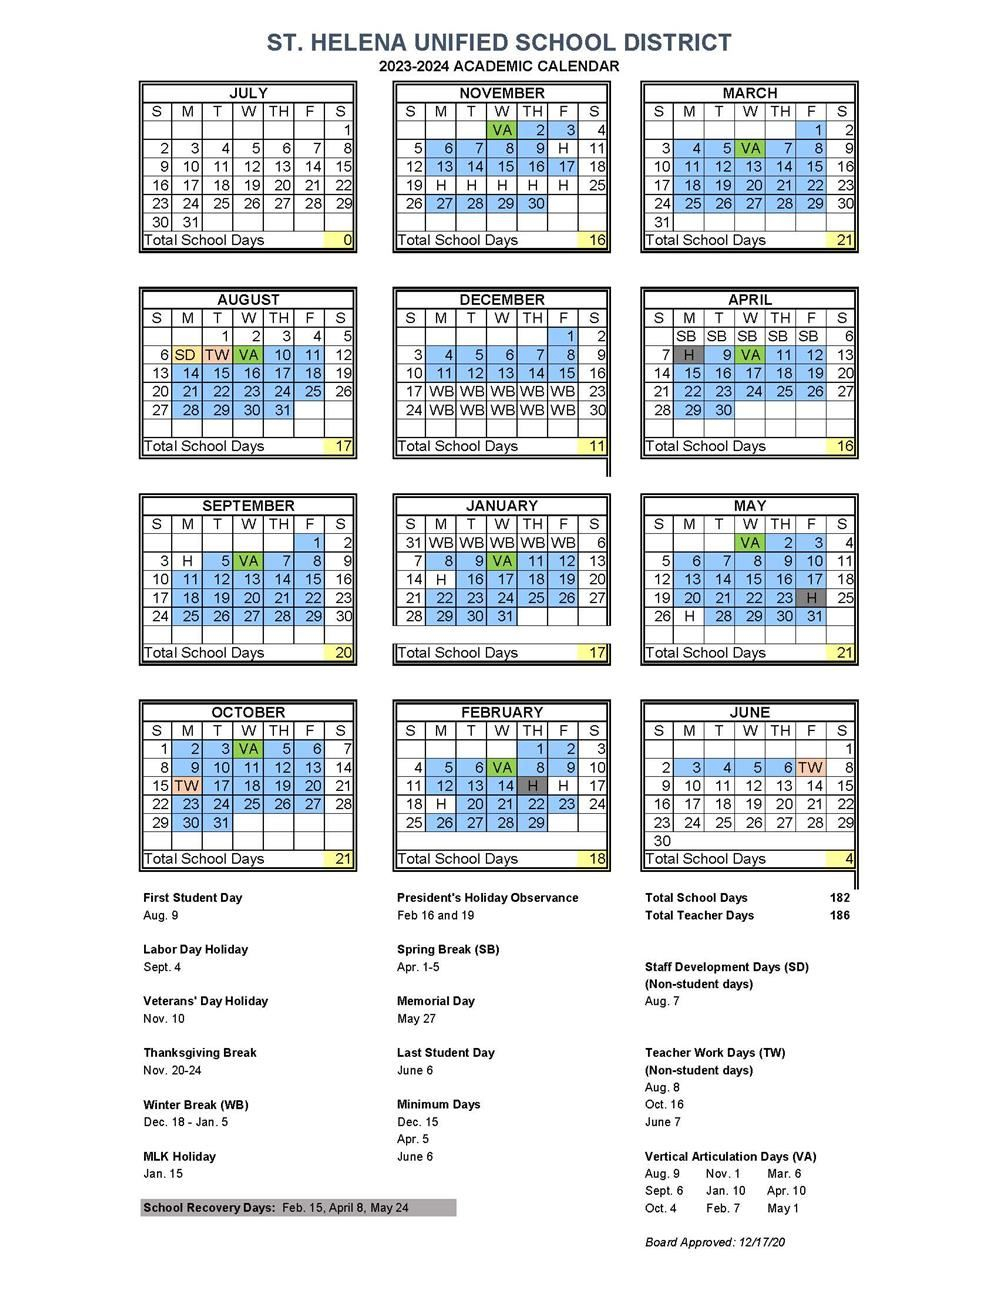 Cms School Calendar 2023 2024 Update Get Calendar 2023 Update 